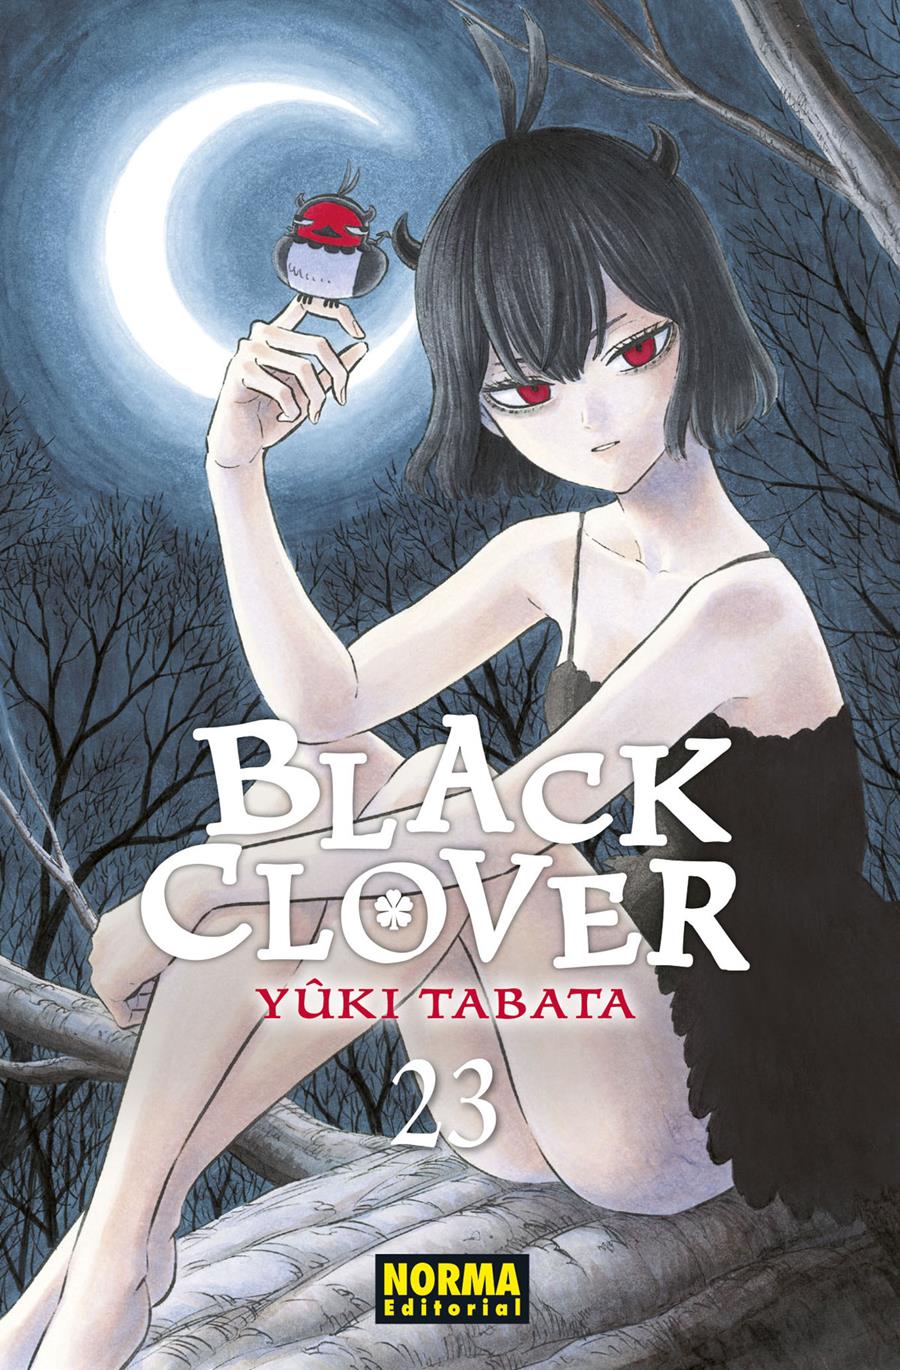 Black clover 23 | N0222-NOR05 | Yûki Tabata | Terra de Còmic - Tu tienda de cómics online especializada en cómics, manga y merchandising